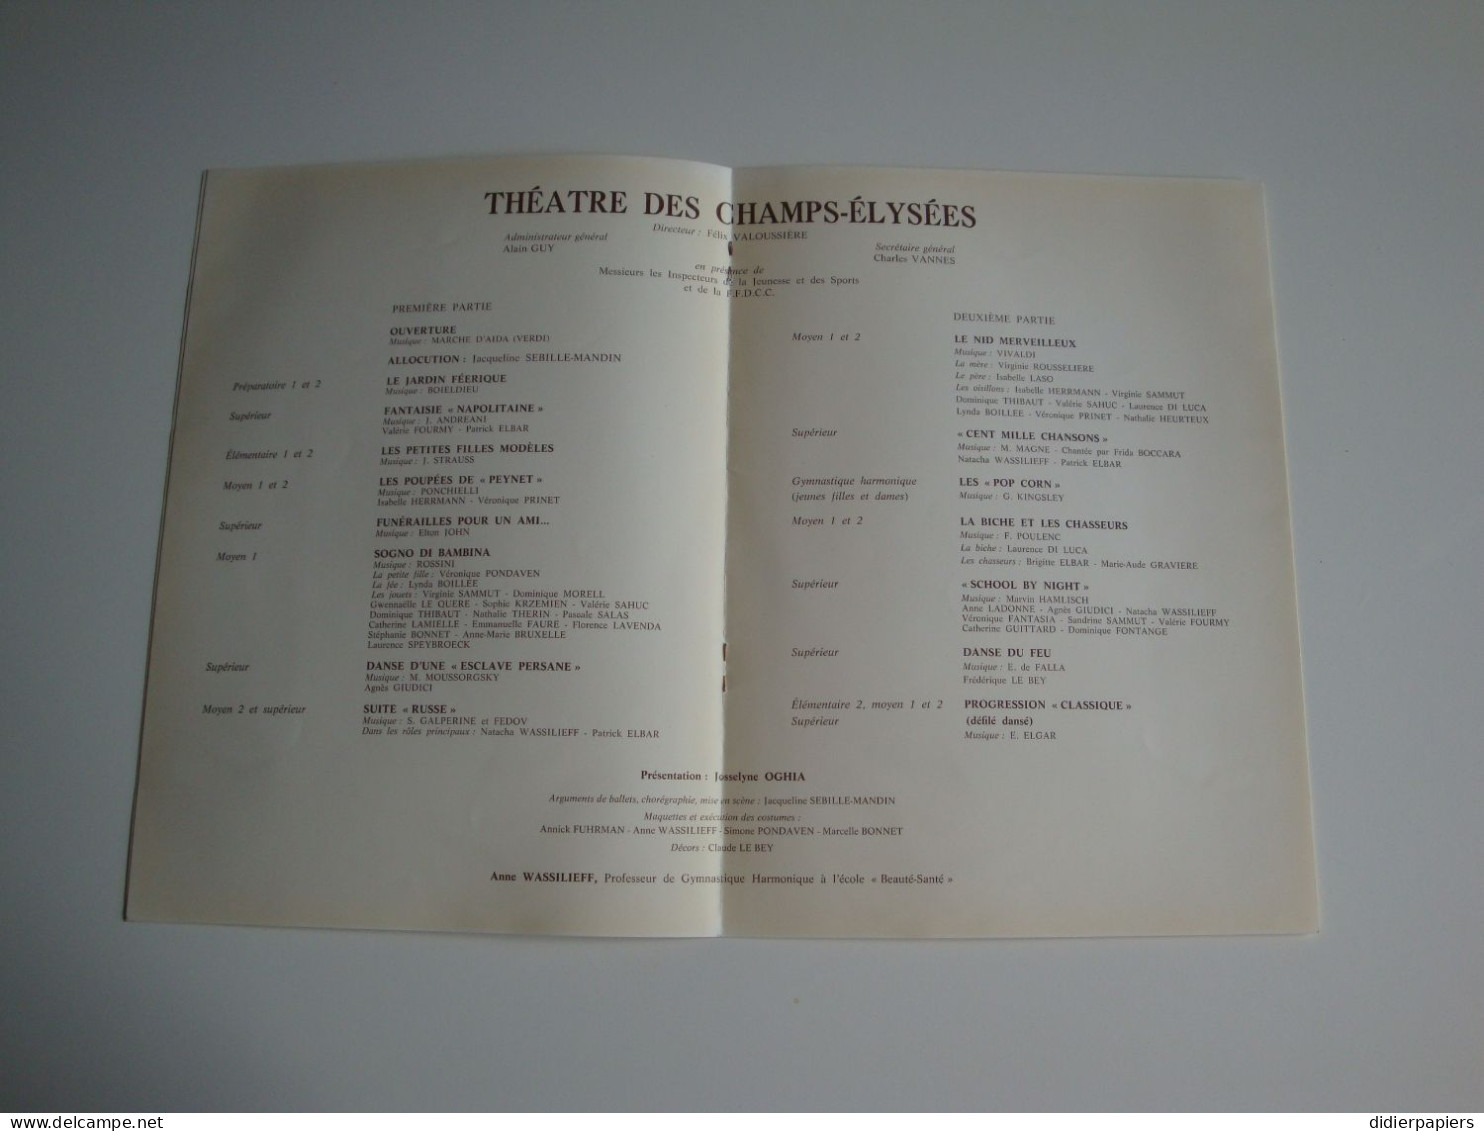 Théatre Des Champs-Elysées 1981 Soirée De Ballets Mme Jacqueline Sebille-Mandin - Programs